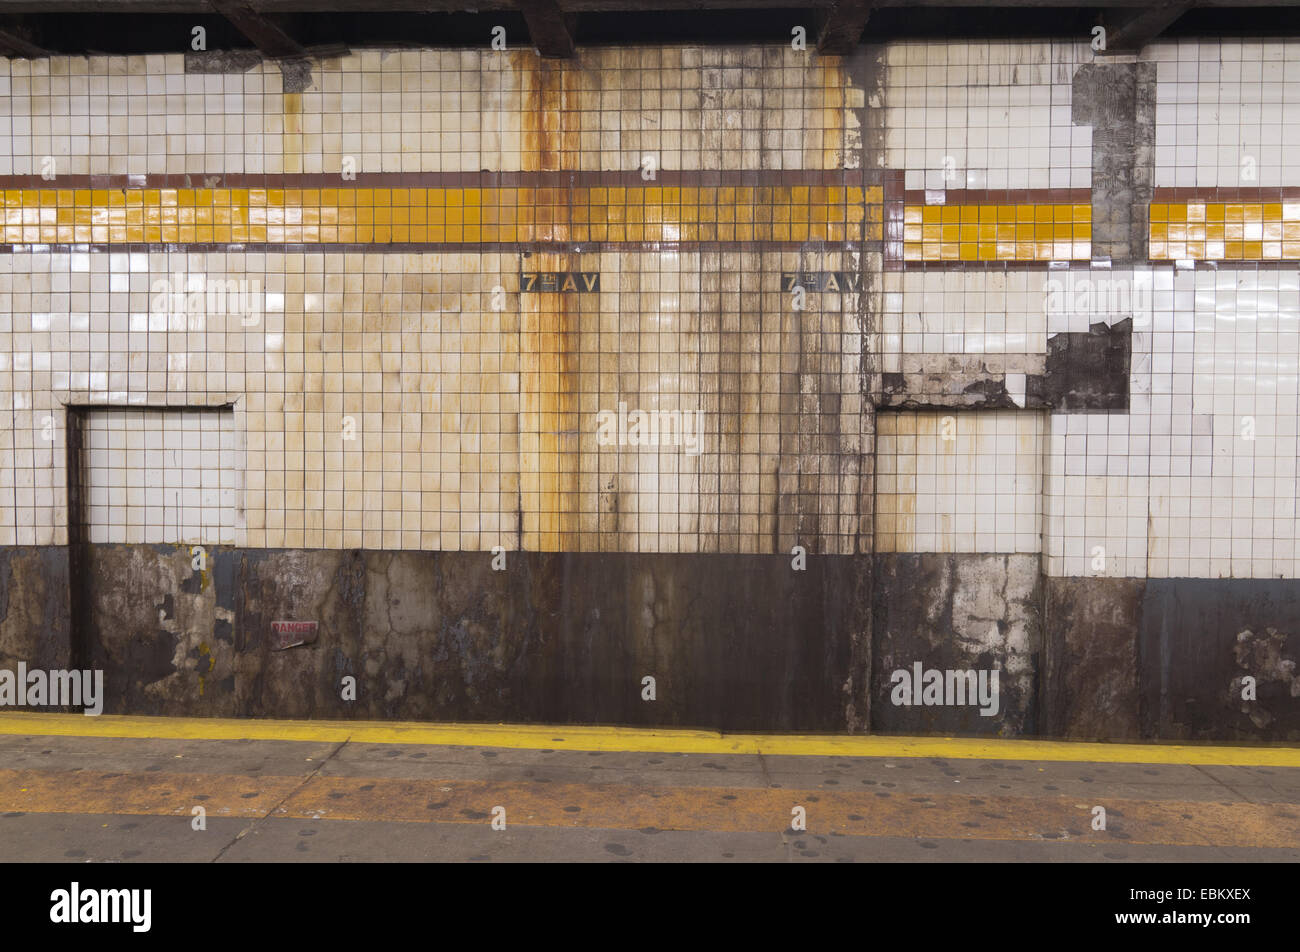 La dégradation des infrastructures, de l'intérieur de la station de métro 7th avenue Brooklyn, New York City, USA Banque D'Images